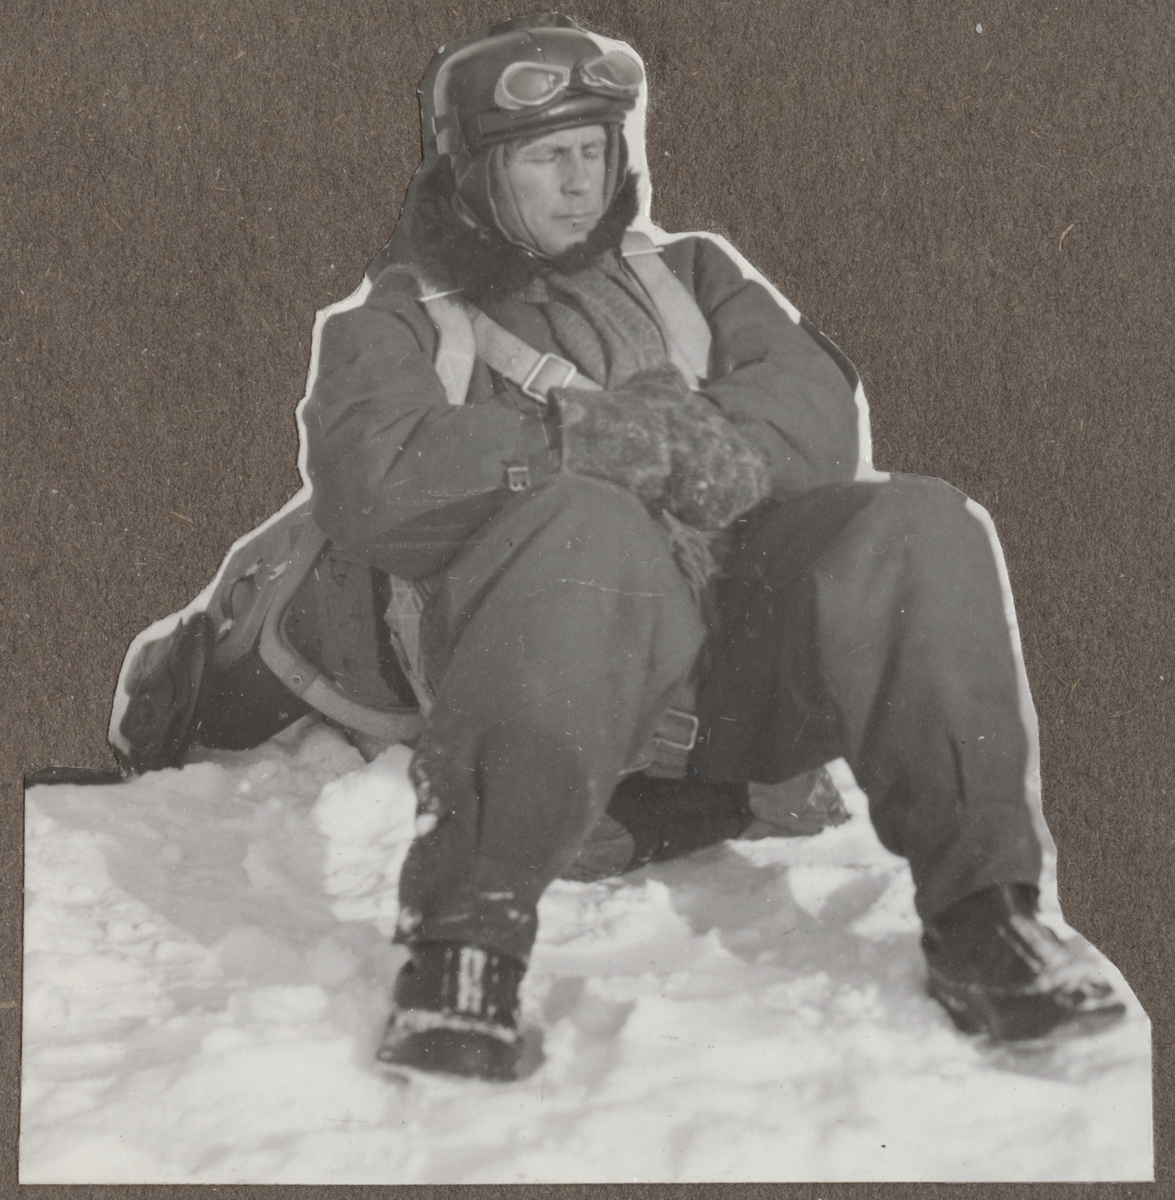 En militär flygare sitter i snön.

Text vid foto: "'Lorichs"